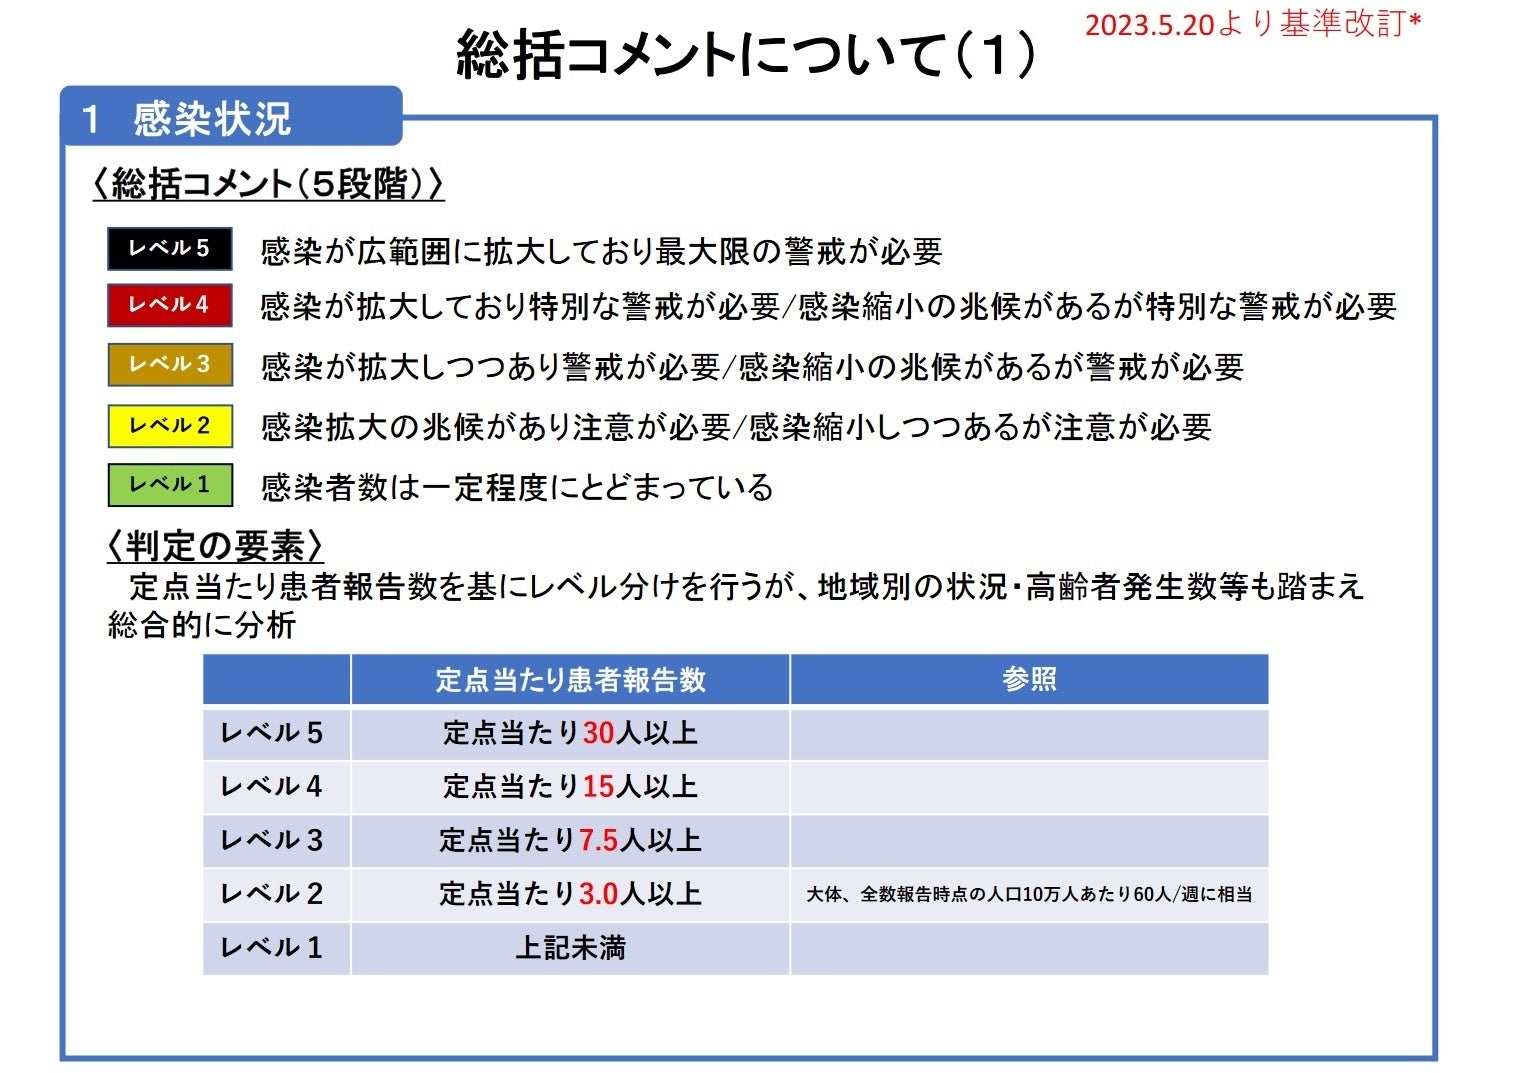 【岡山大学】岡山県内の感染状況・医療提供体制の分析について（2023年7月14日現在）